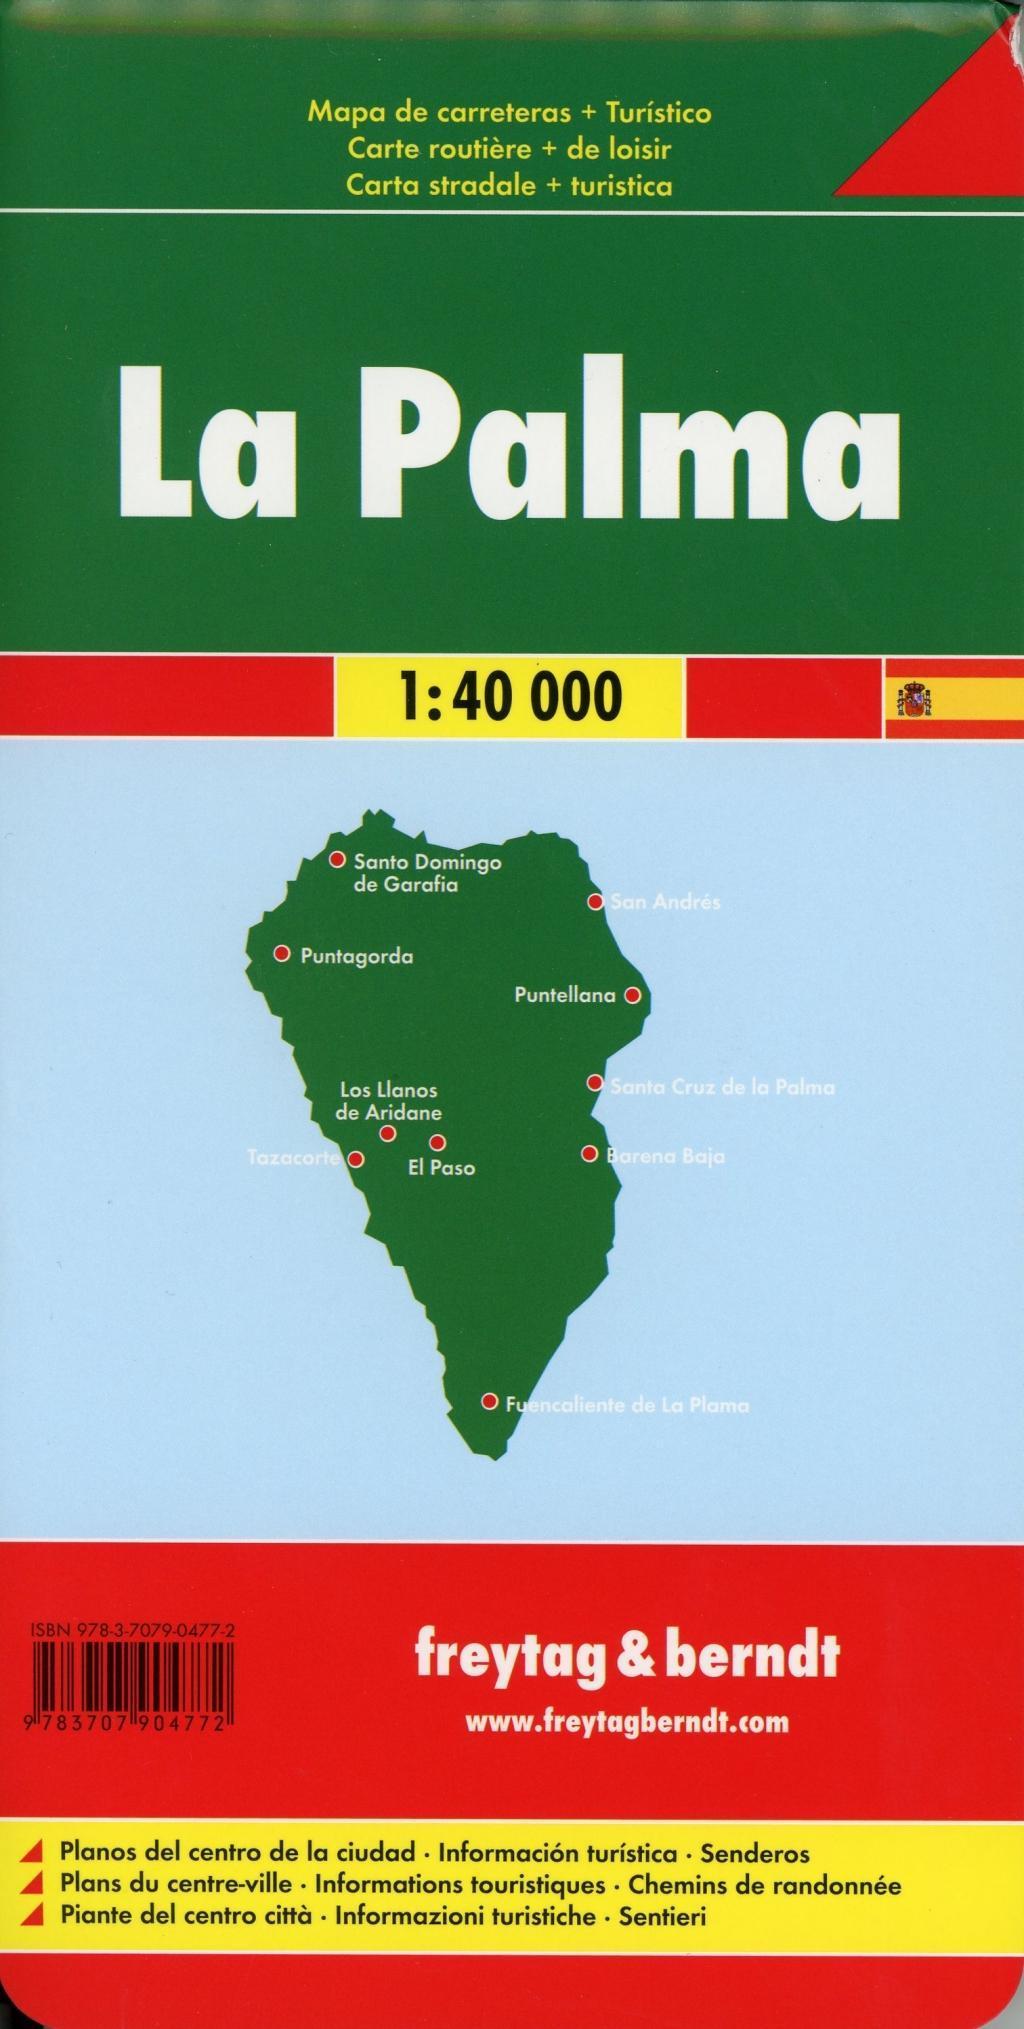 Auto karte Escala 1:40.000 Freytag & Berndt.: Toeristische wegenkaart 1:40 000: AK 0518 mapa de carreteras La Palma 